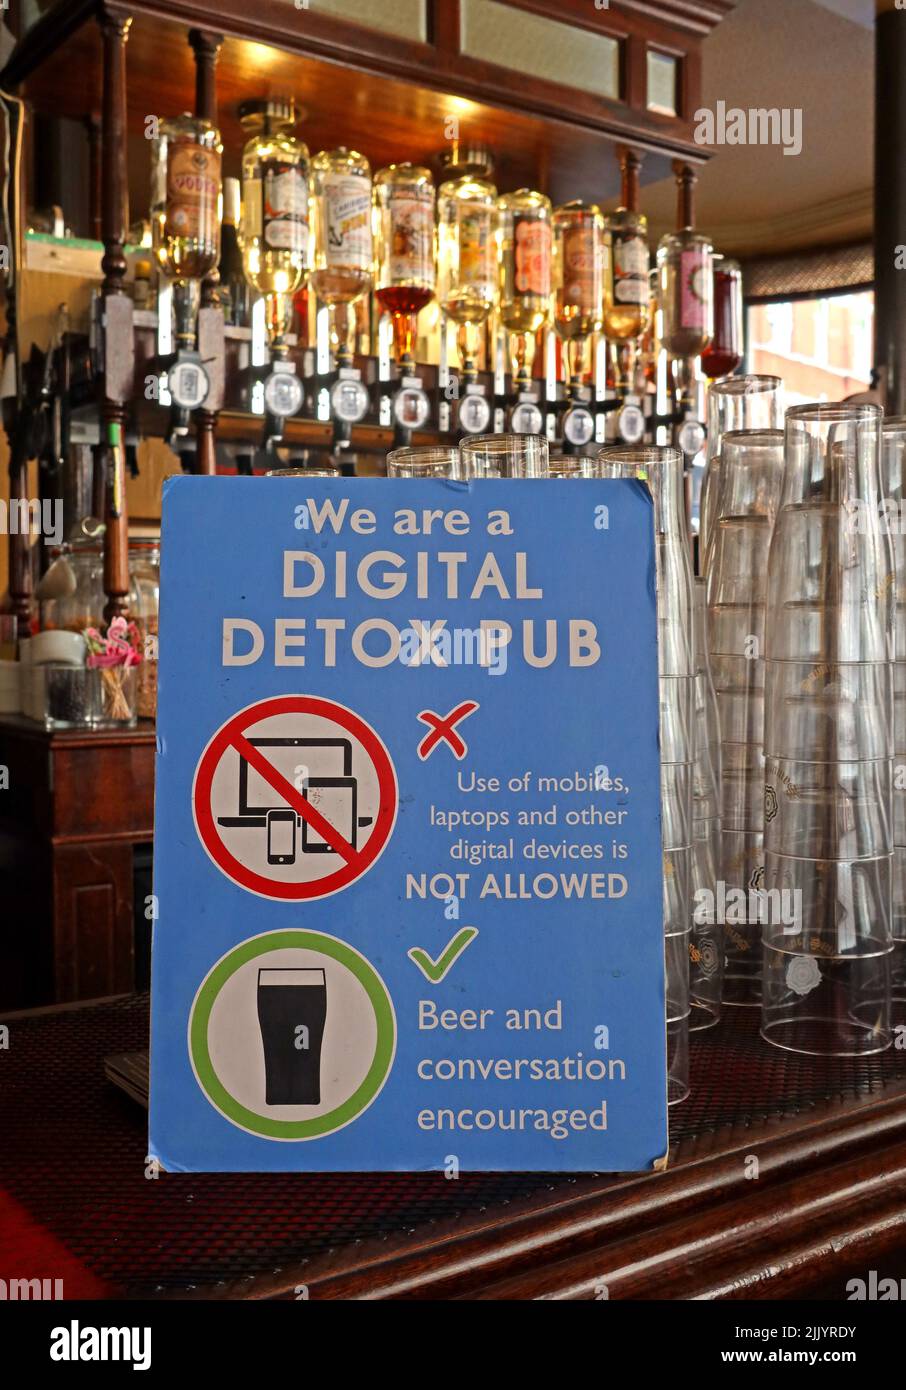 Nous sommes un pub numérique Detox, Digital Detox au White Horse Soho, 45 Rupert St, SOHO, Londres, Angleterre, ROYAUME-UNI, W1D 7PG Banque D'Images